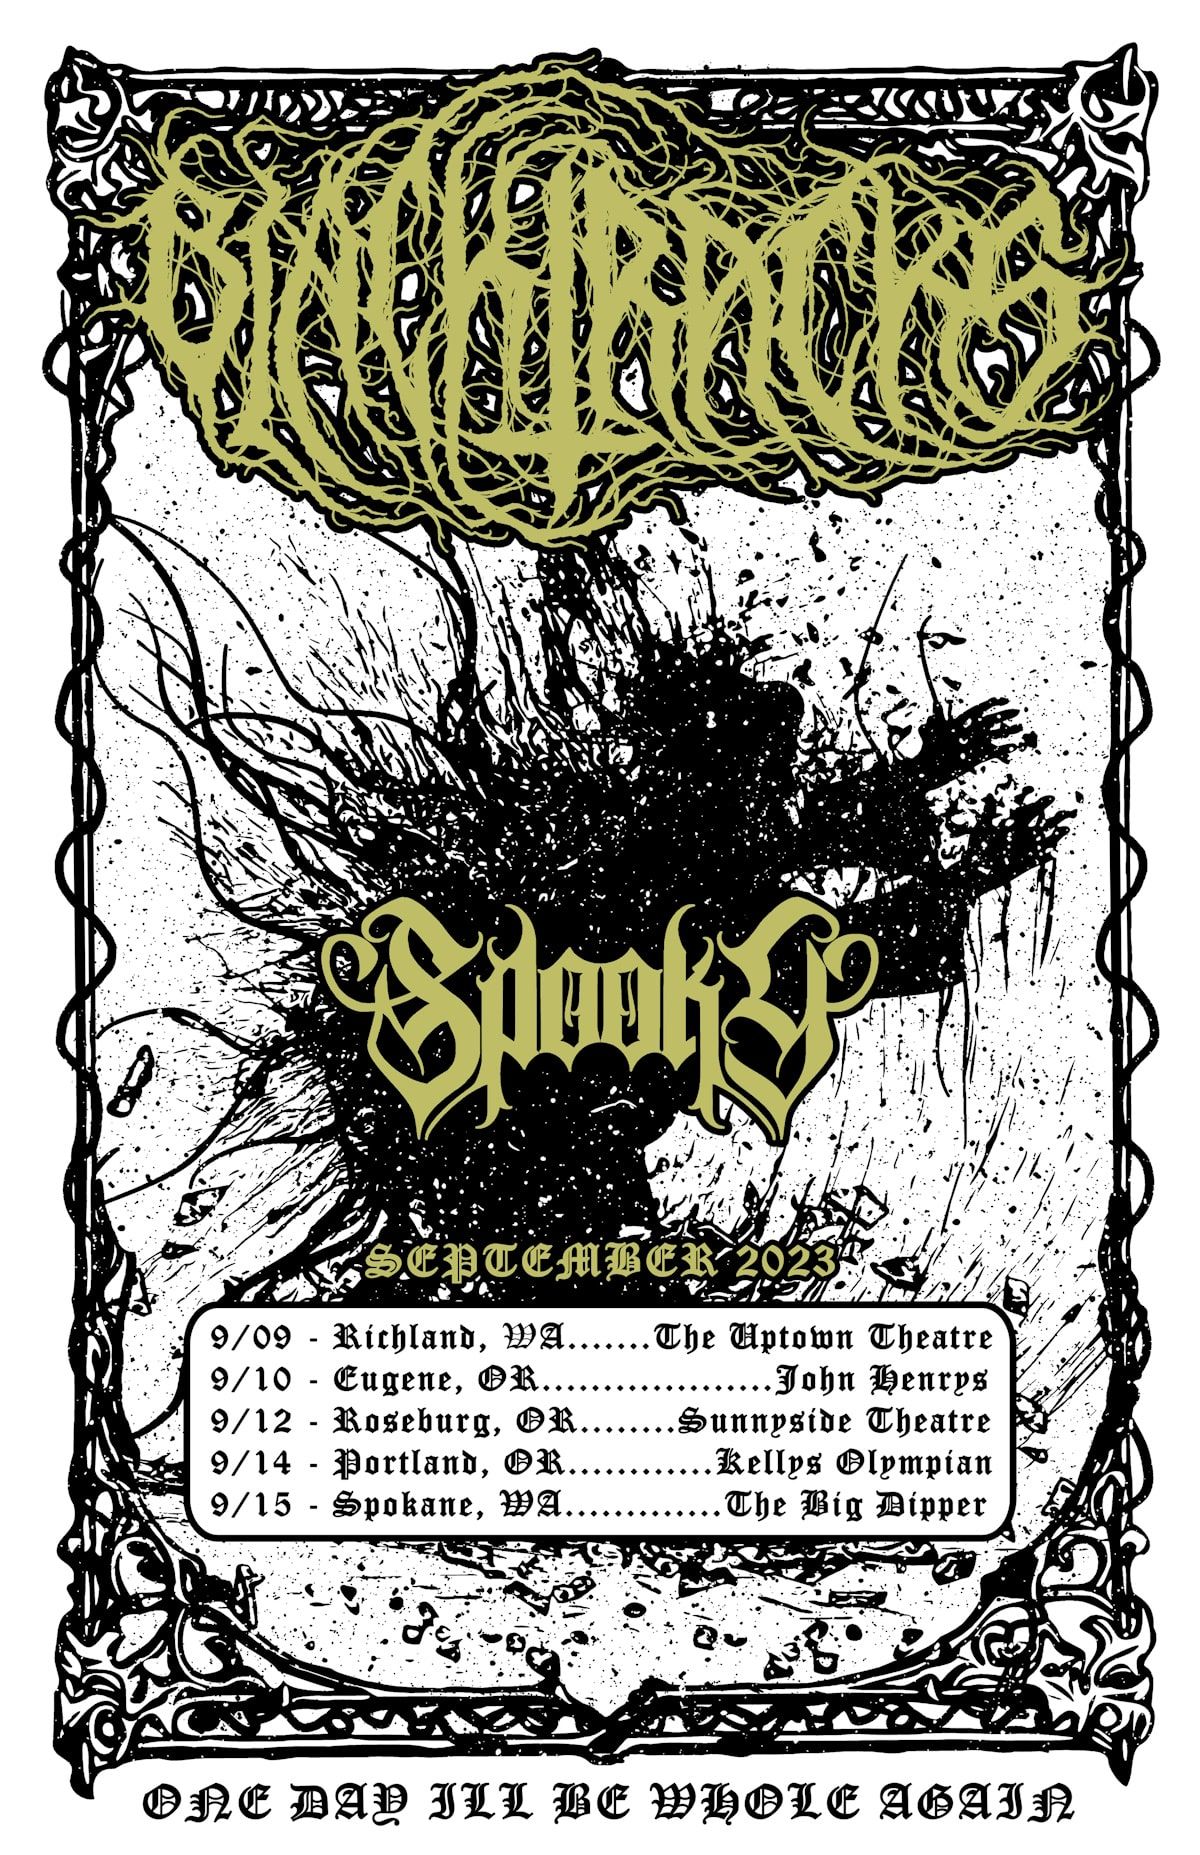 BLACKTRACKS unleash "Witches" - tour dates